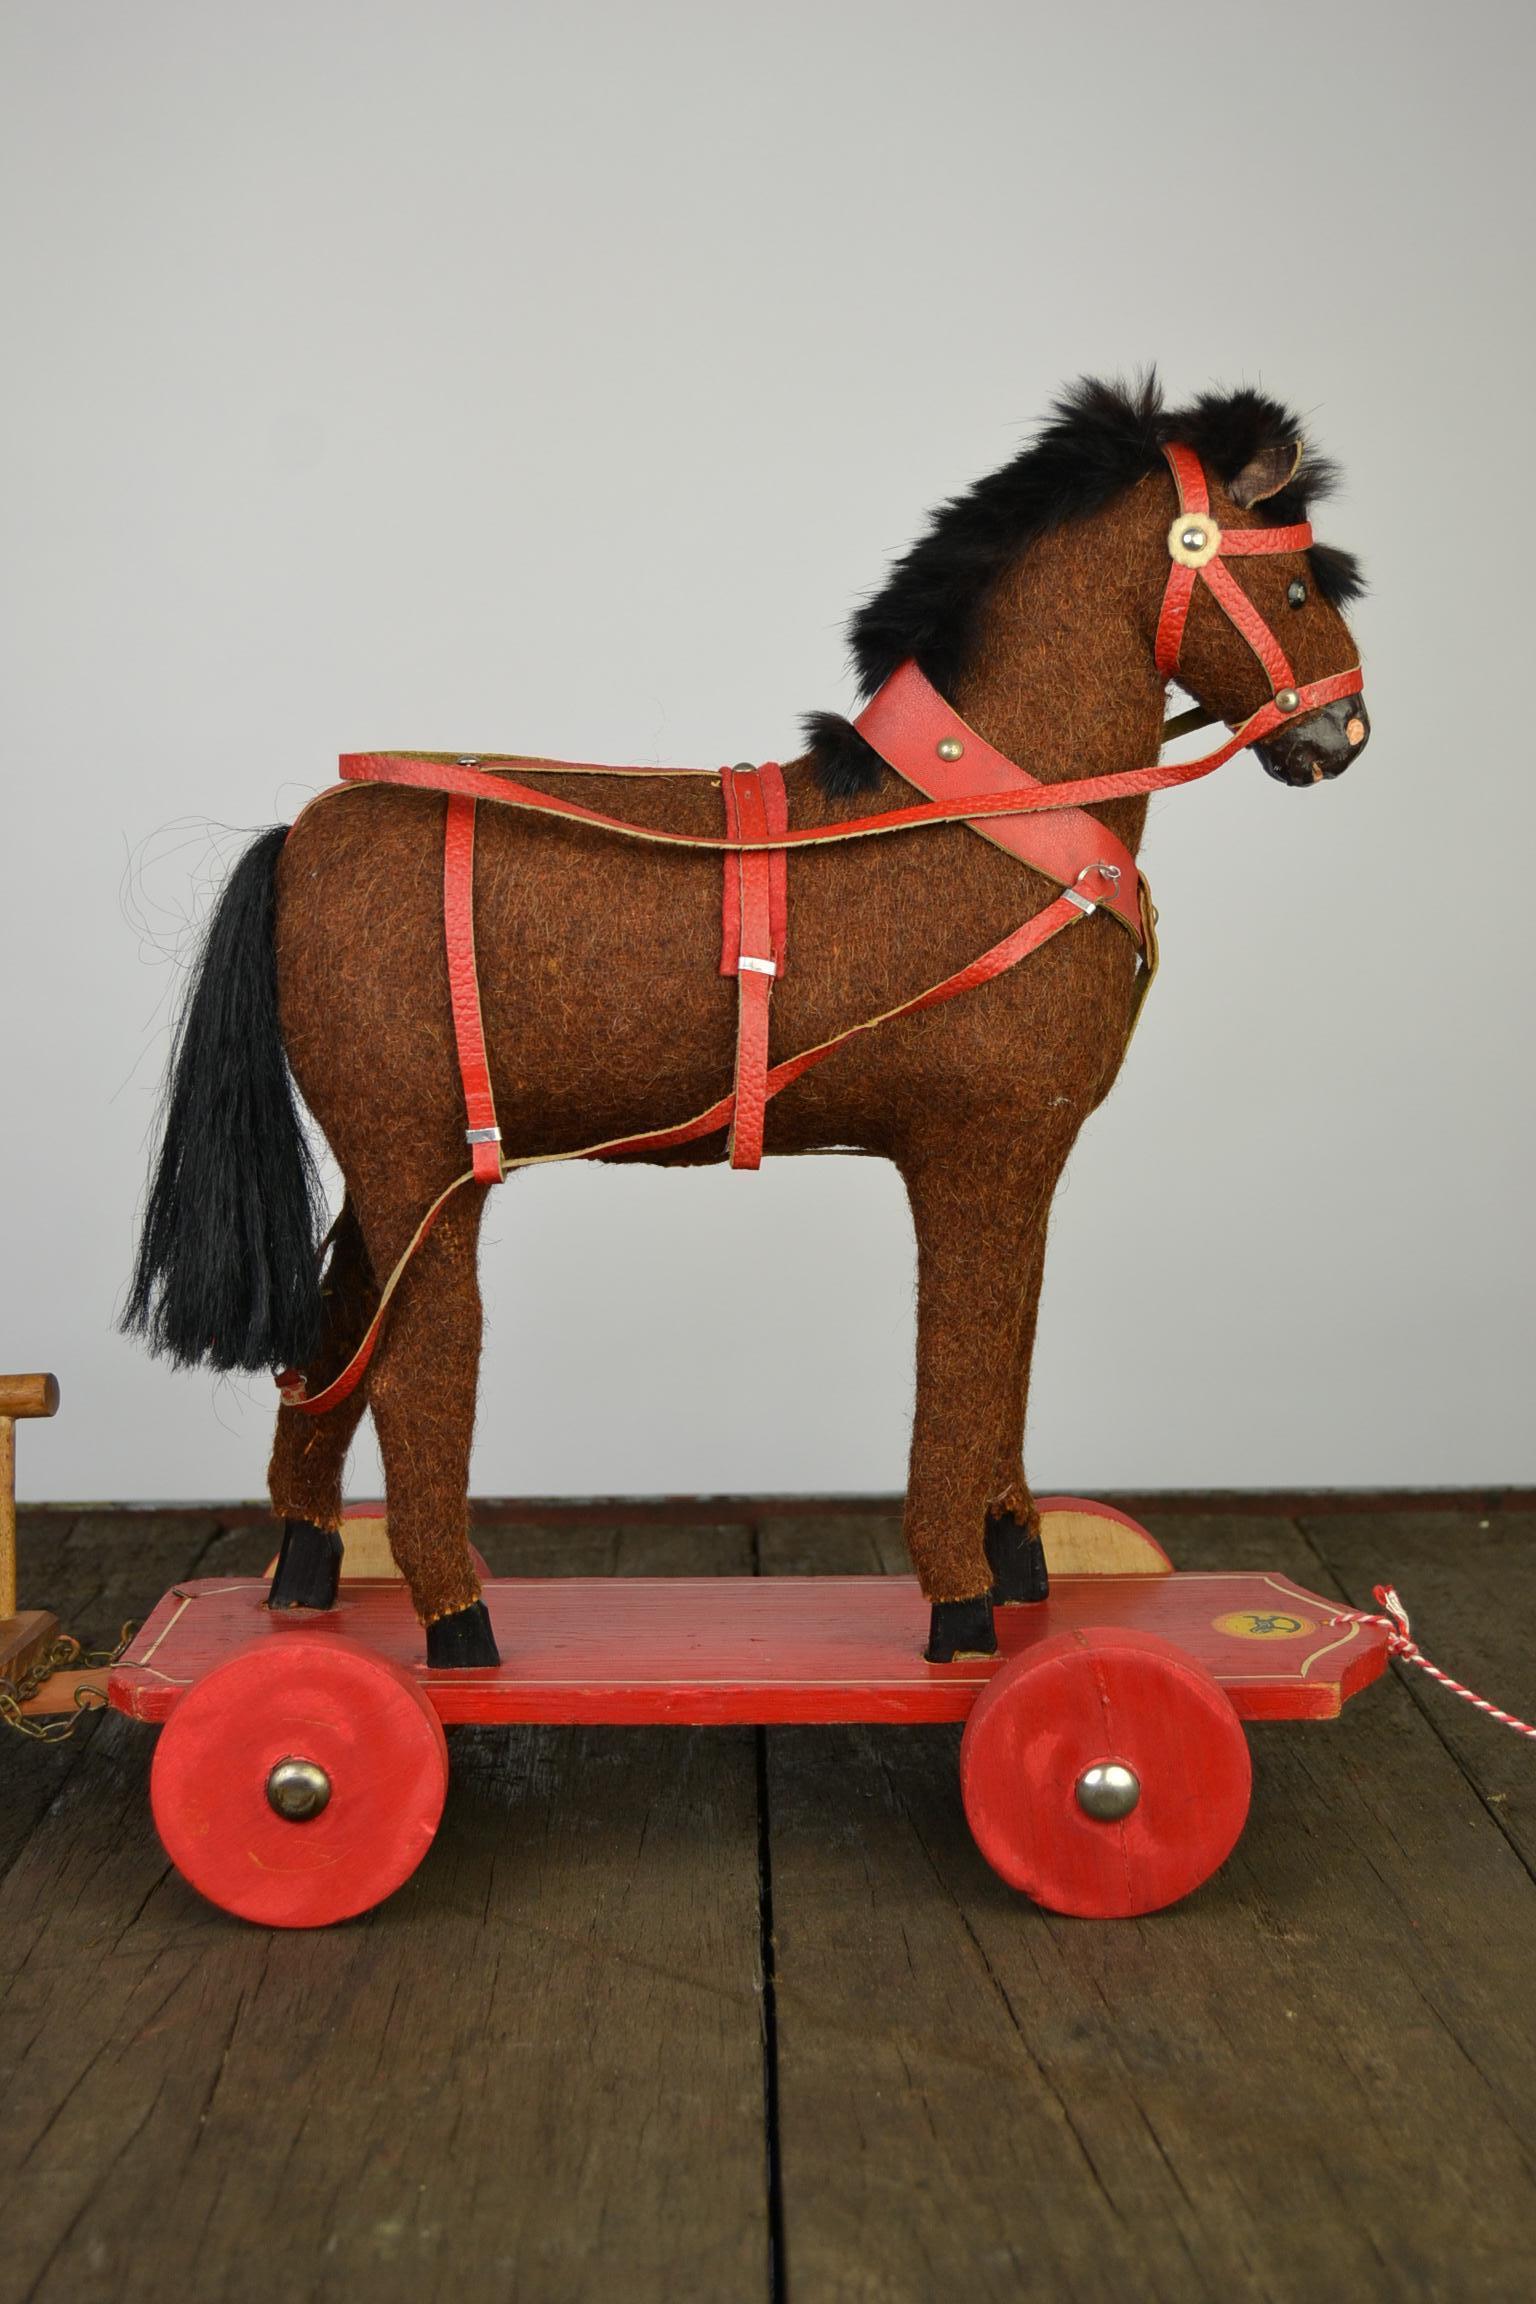 Schöne antike deutsche Roy,
ein Zugspielzeug, ein Zugpferd mit Wagen.
Dieses antike Spielzeugpferd aus den 1930er Jahren ist auf einer hölzernen Plattform mit Rädern montiert. Das geschnitzte Holzpferd ist mit braunem Sackleinen bedeckt.
Die Hufe